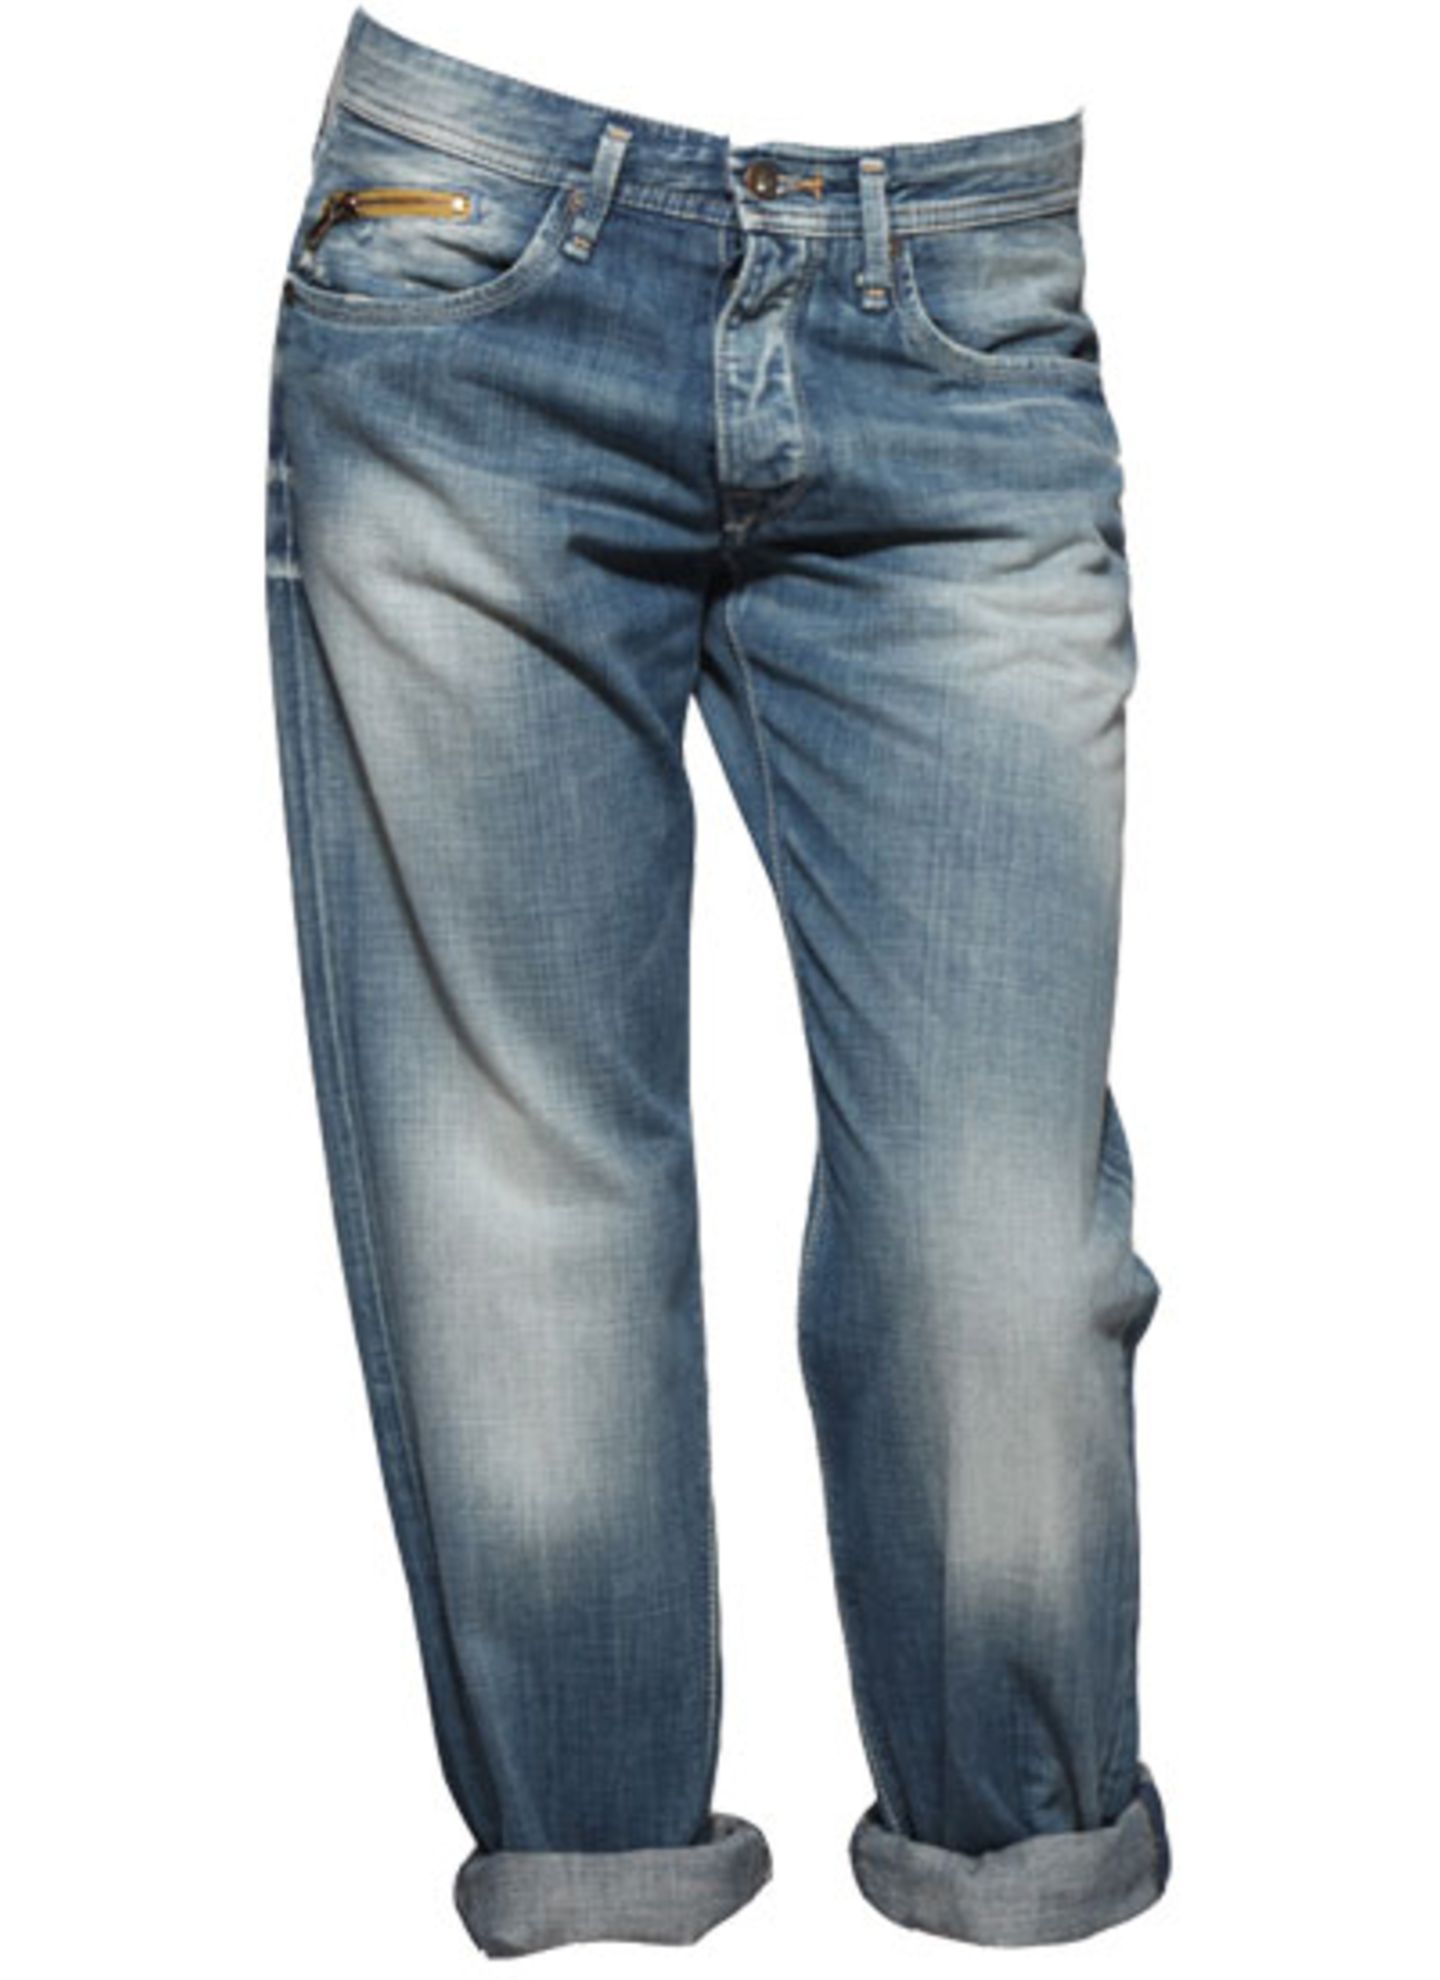 Schlichte Boyfriend-Jeans von Pepe Jeans über Asos, um 89 Euro.